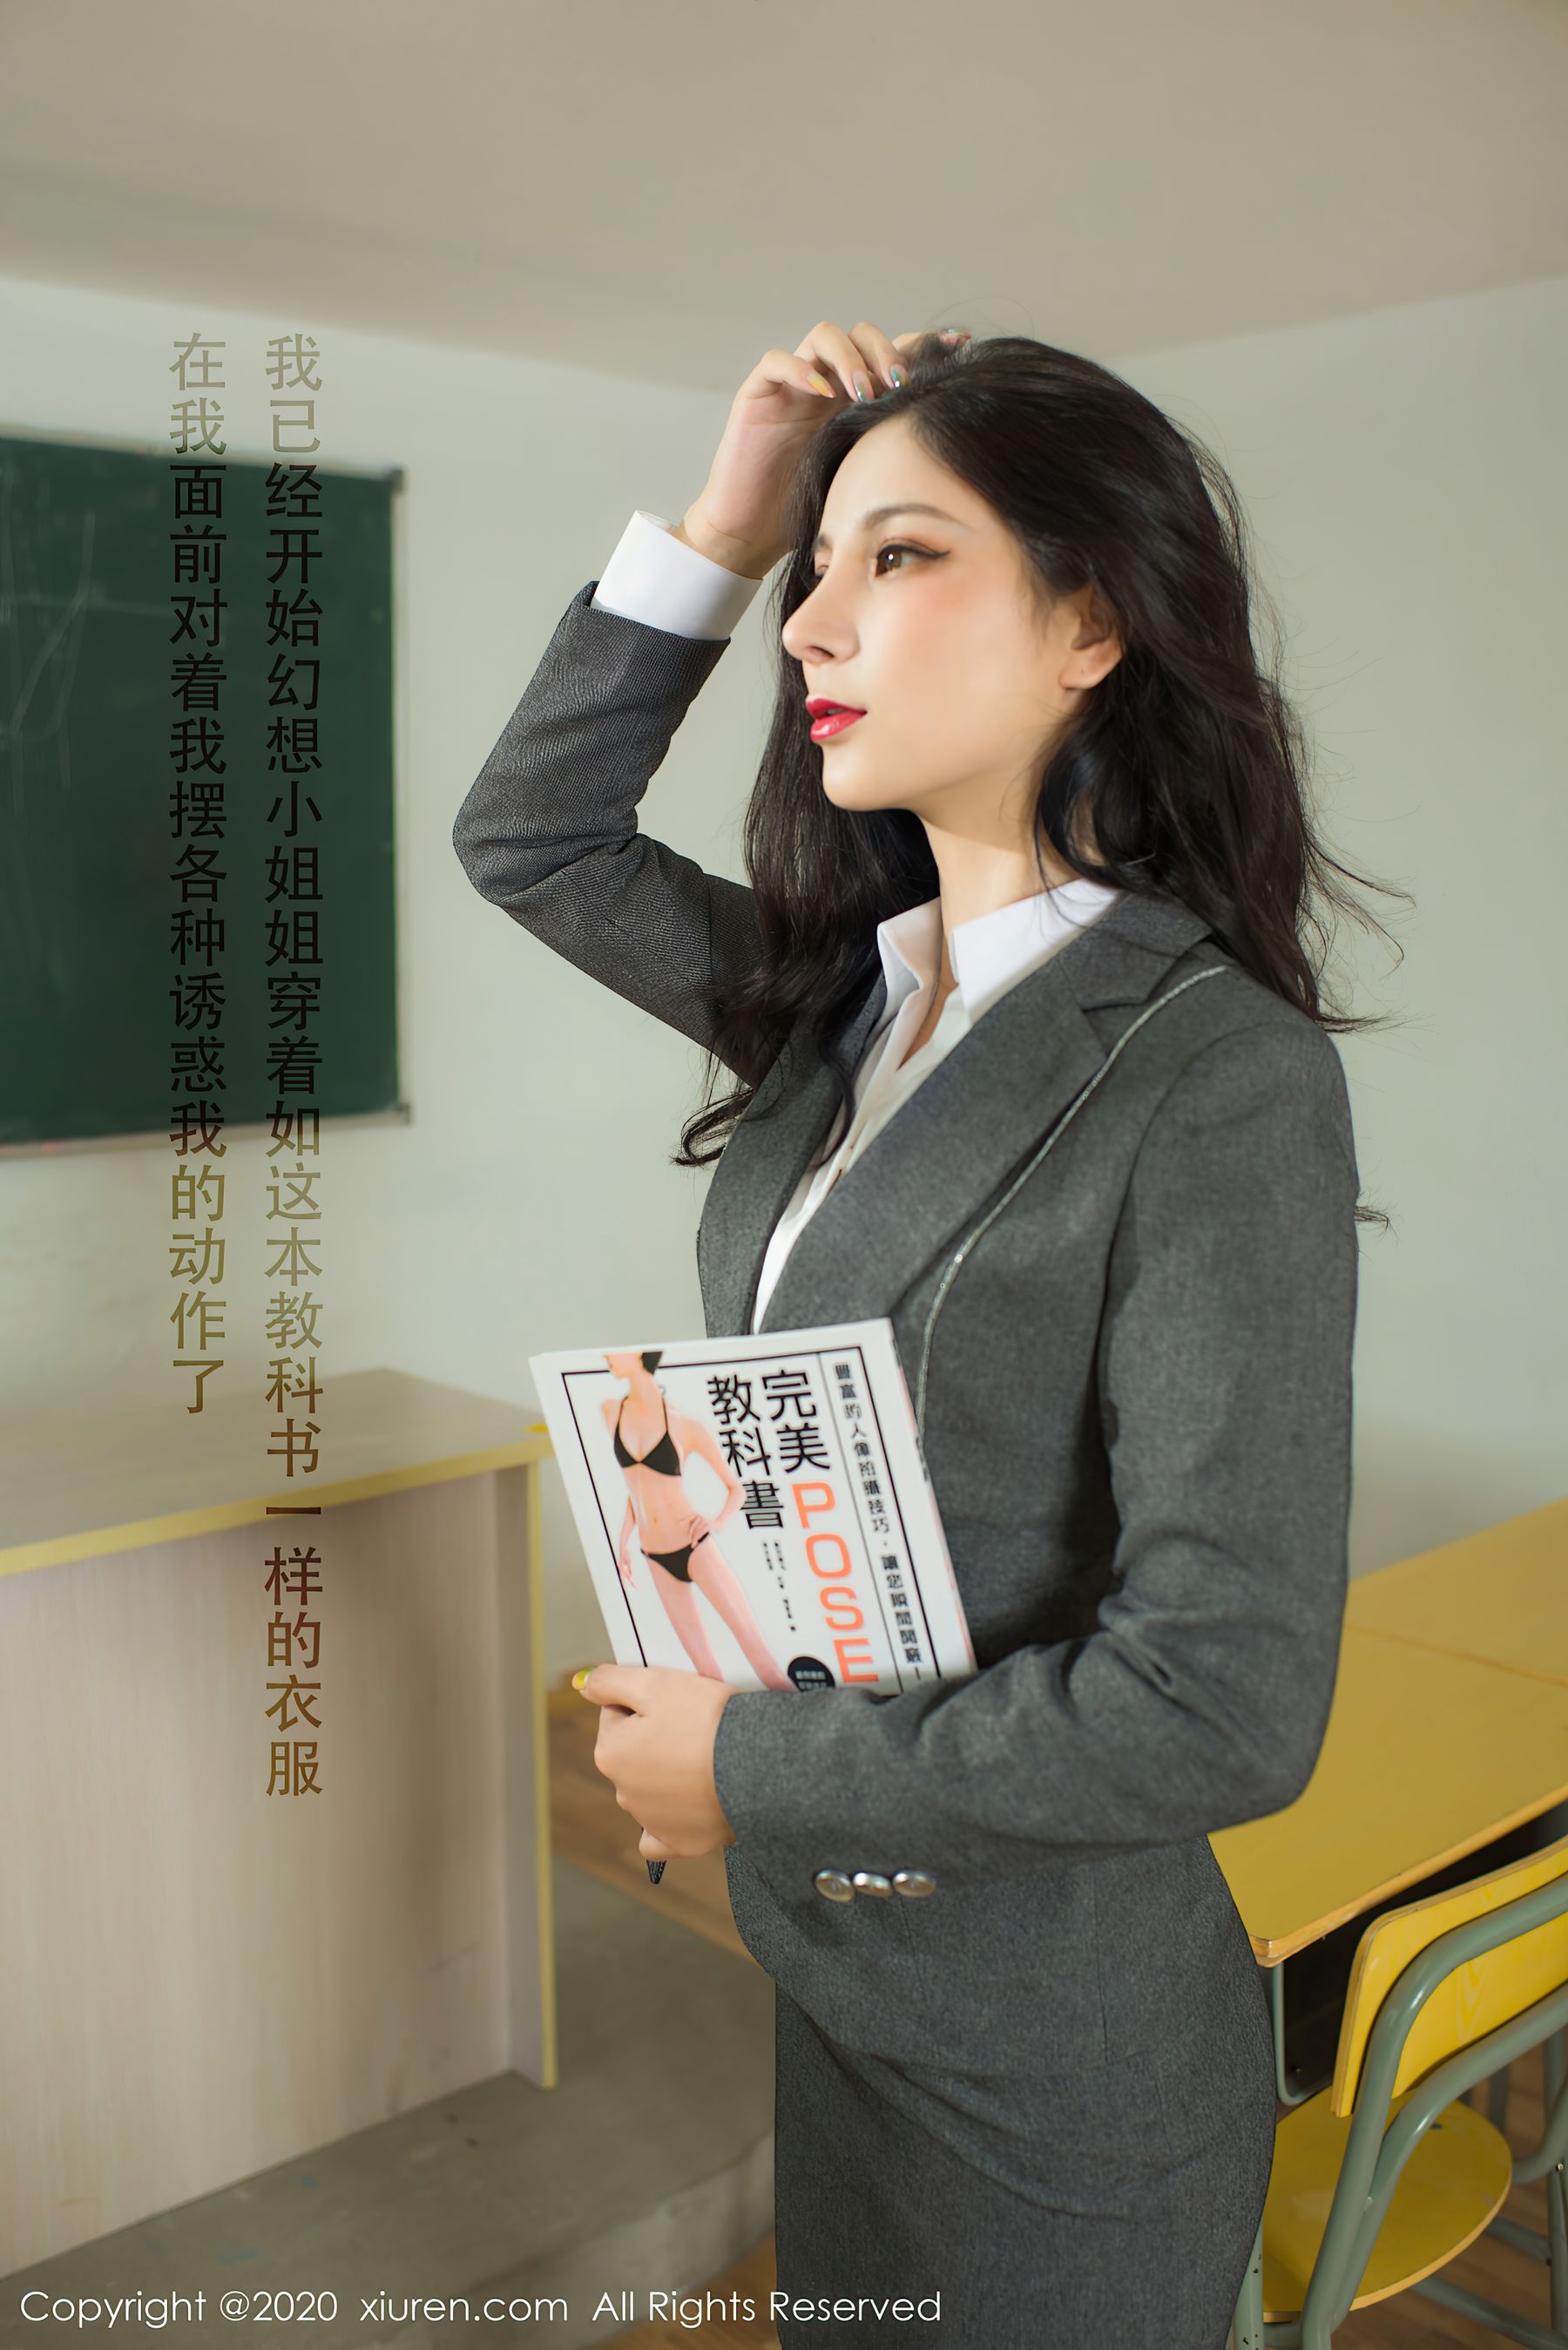 [人 xiuren] no.2591 小 妖 yummy – classroom stockings temptation